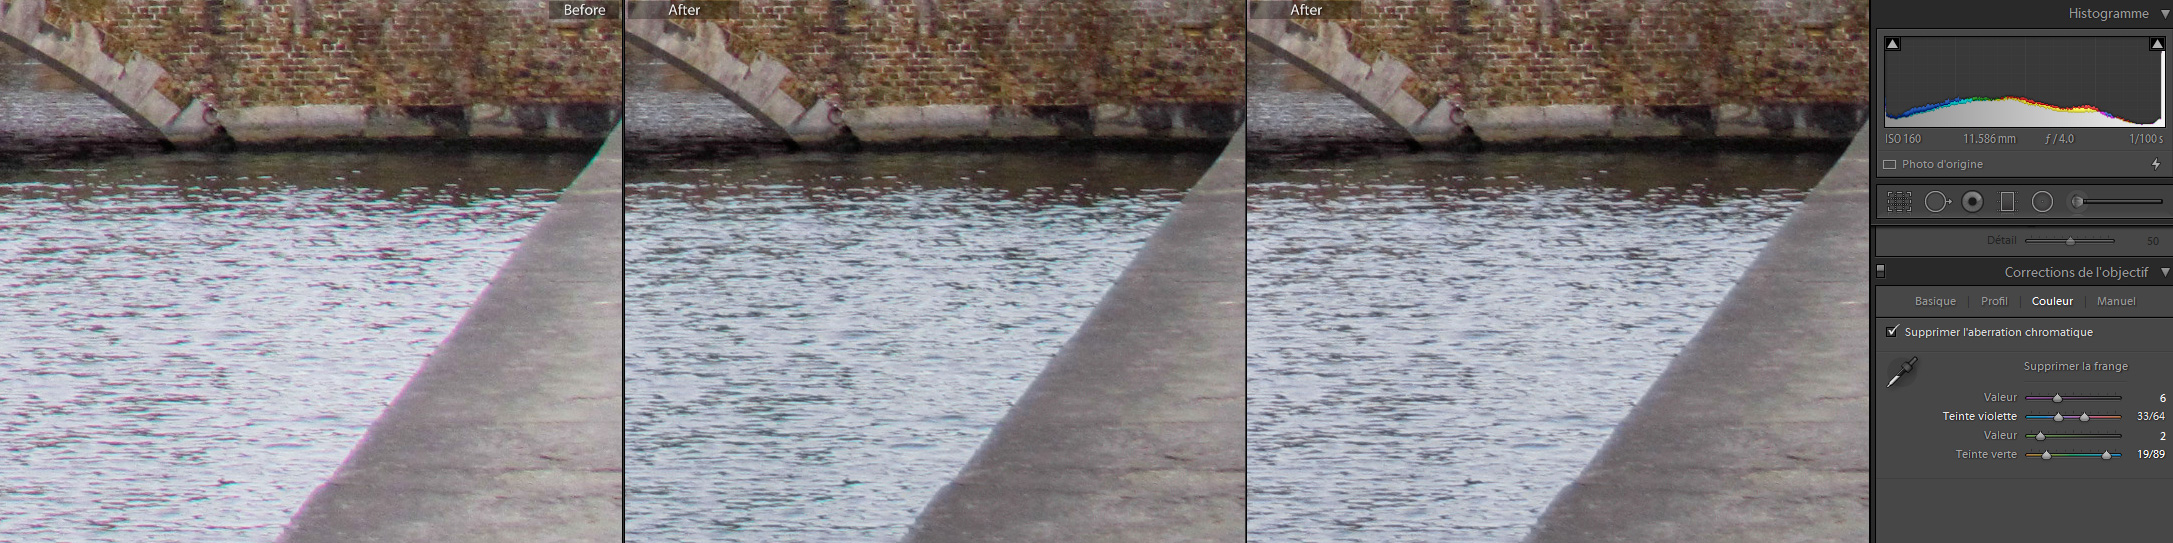 aberration chromatique - gauche : original ; milieu : après la première correction manuelle ; droite : correction complémentaire de la teinte verte